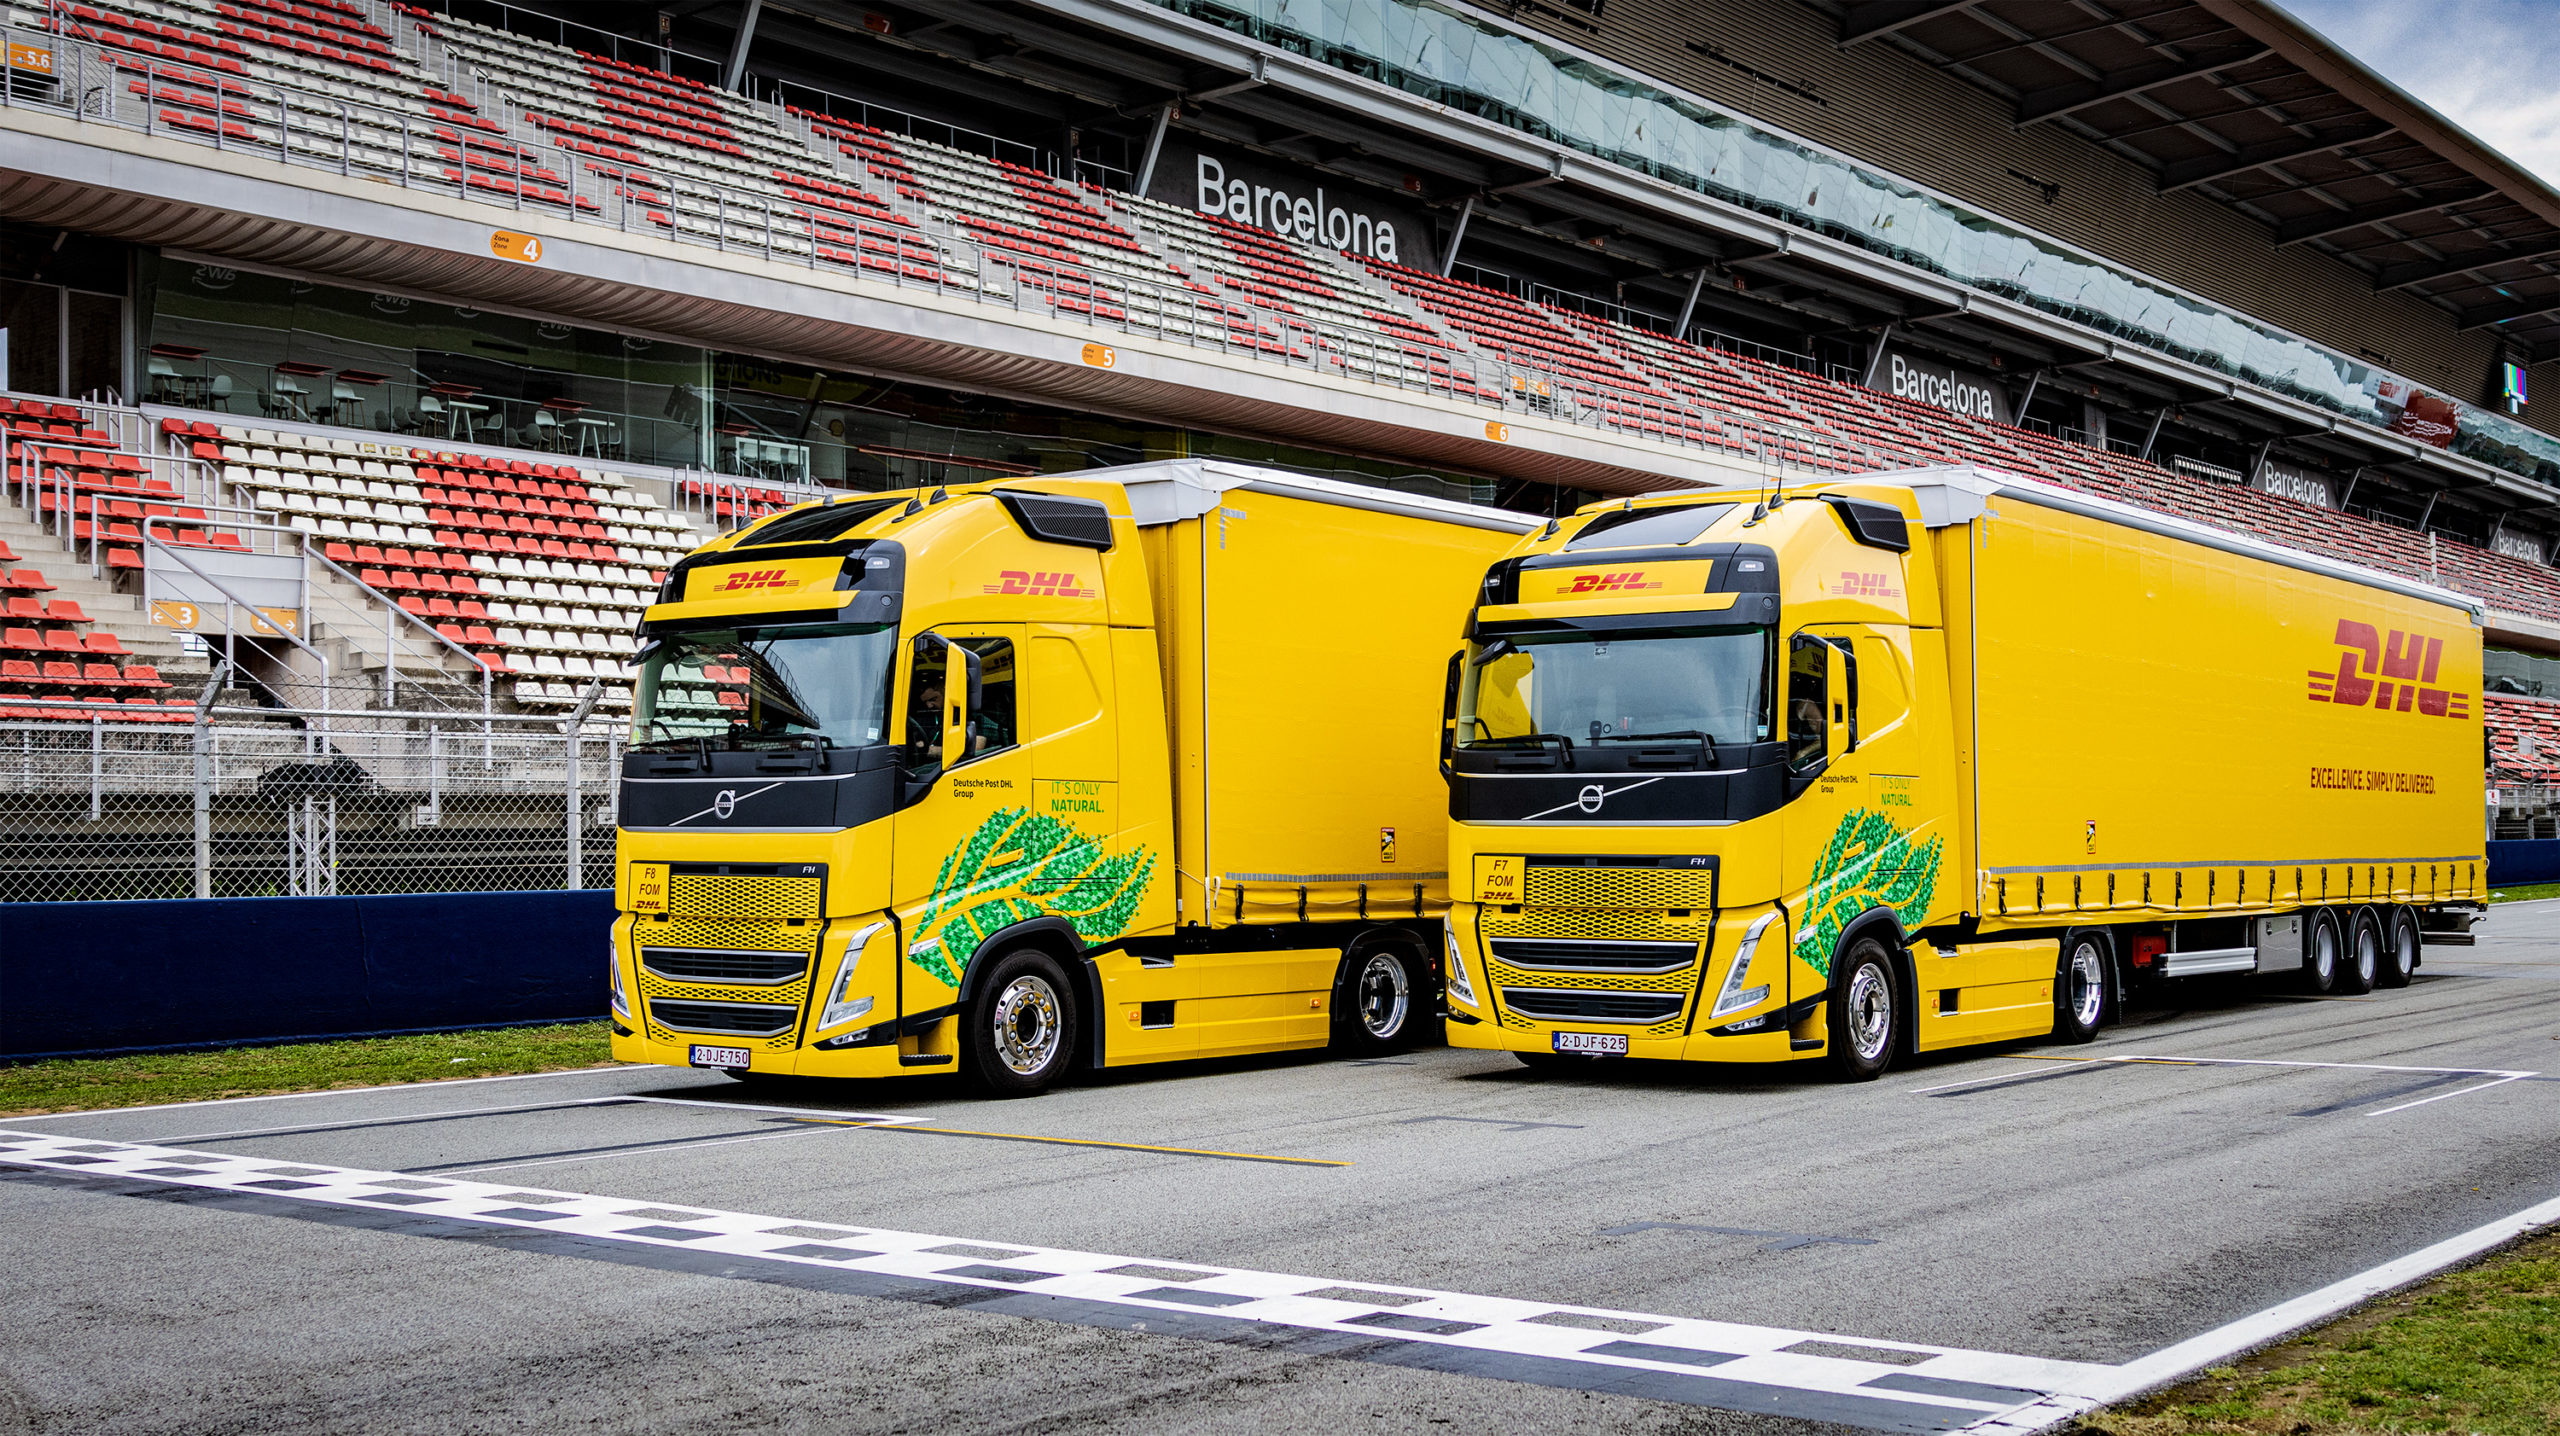 DHL добавляет 18 новых грузовиков, работающих на биотопливе, для доставки болидов Формулы 1